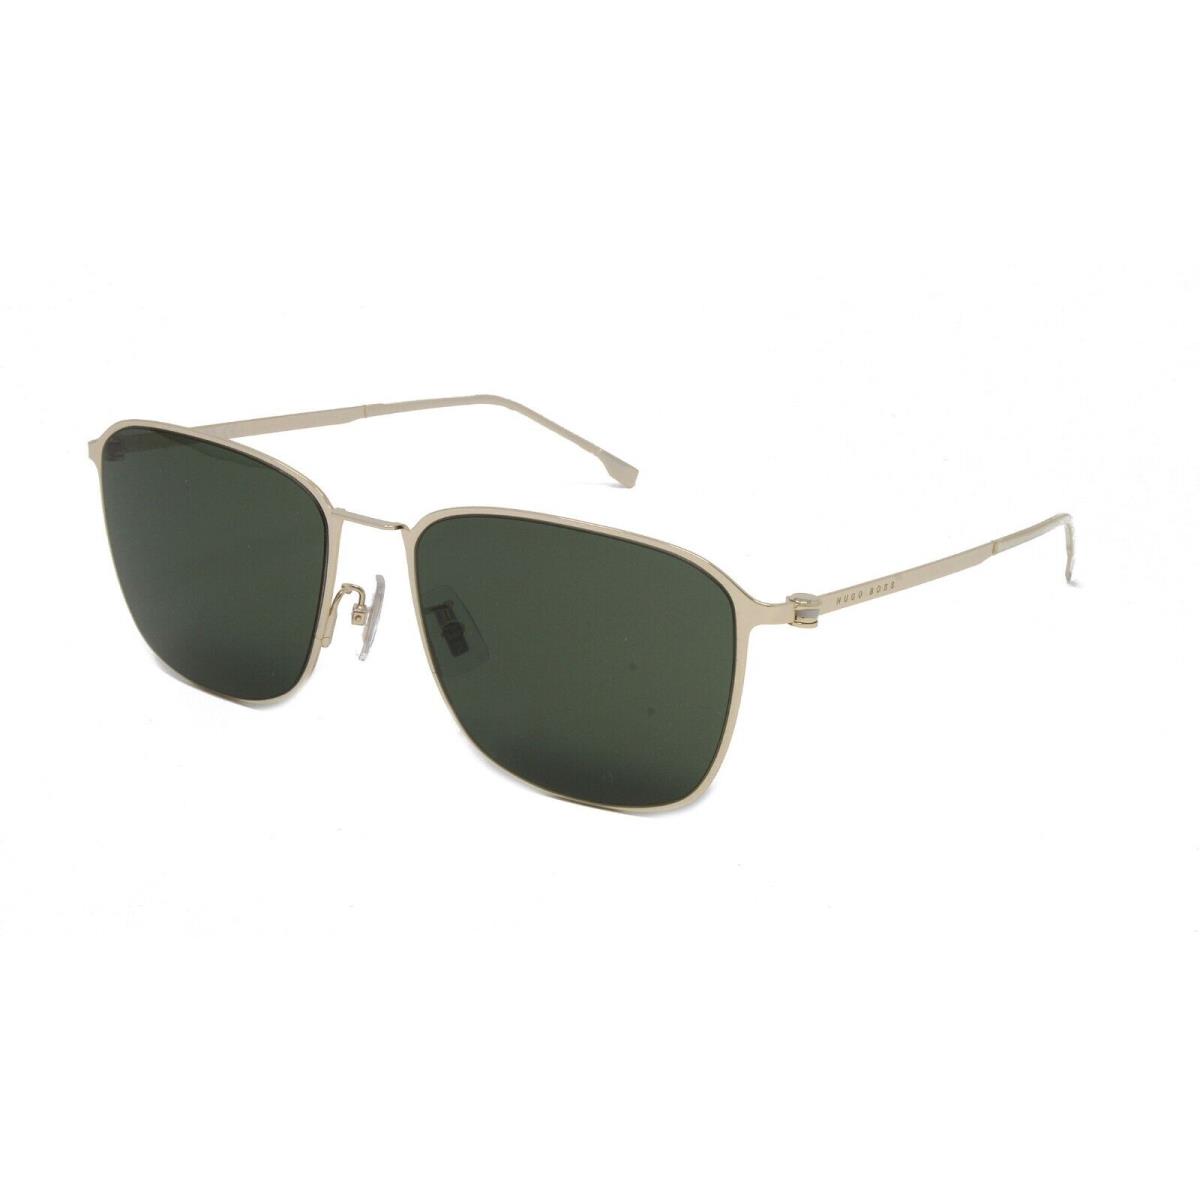 Boss Hugo Boss Sunglasses Men`s Square 1405/F/SK J5G Gold 59mm Green Lens - Gold Frame, Green Lens